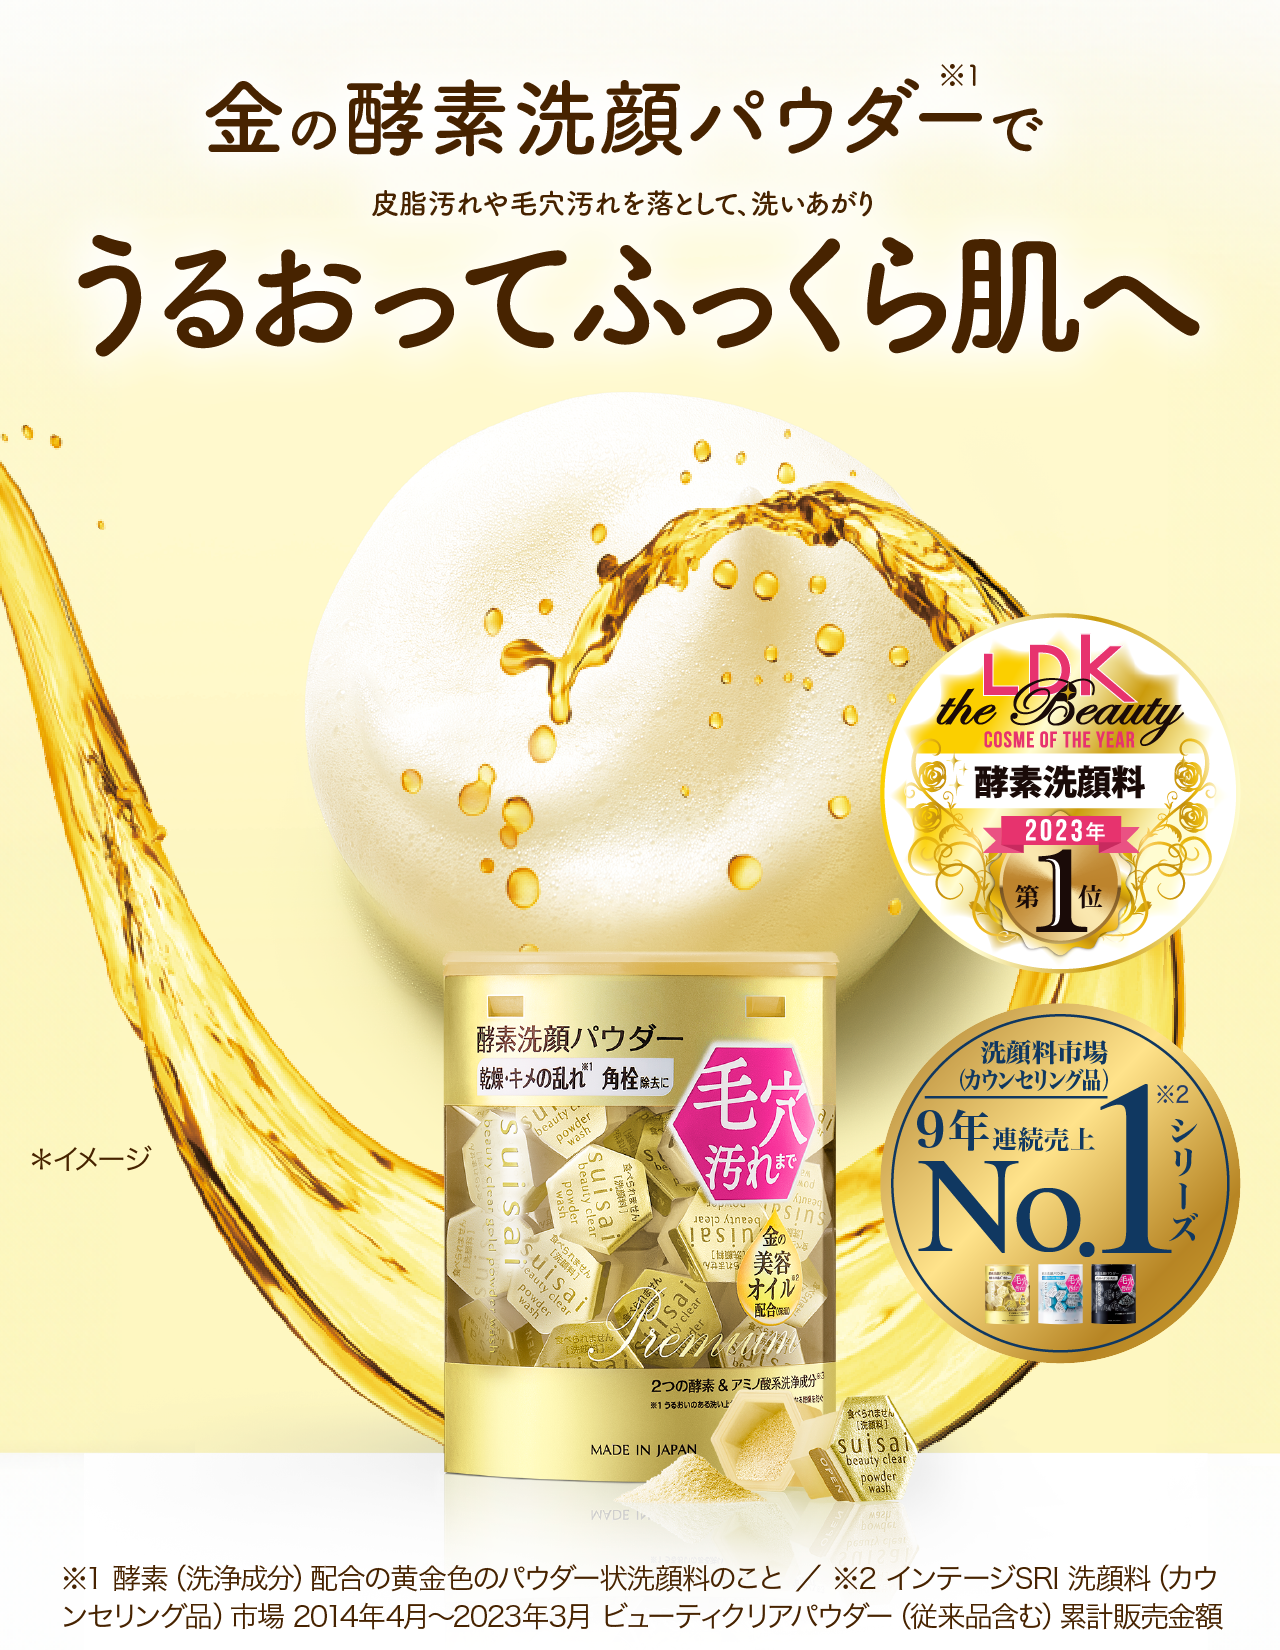 スキンケア/基礎化粧品スイサイ 酵素洗顔 ゴールド